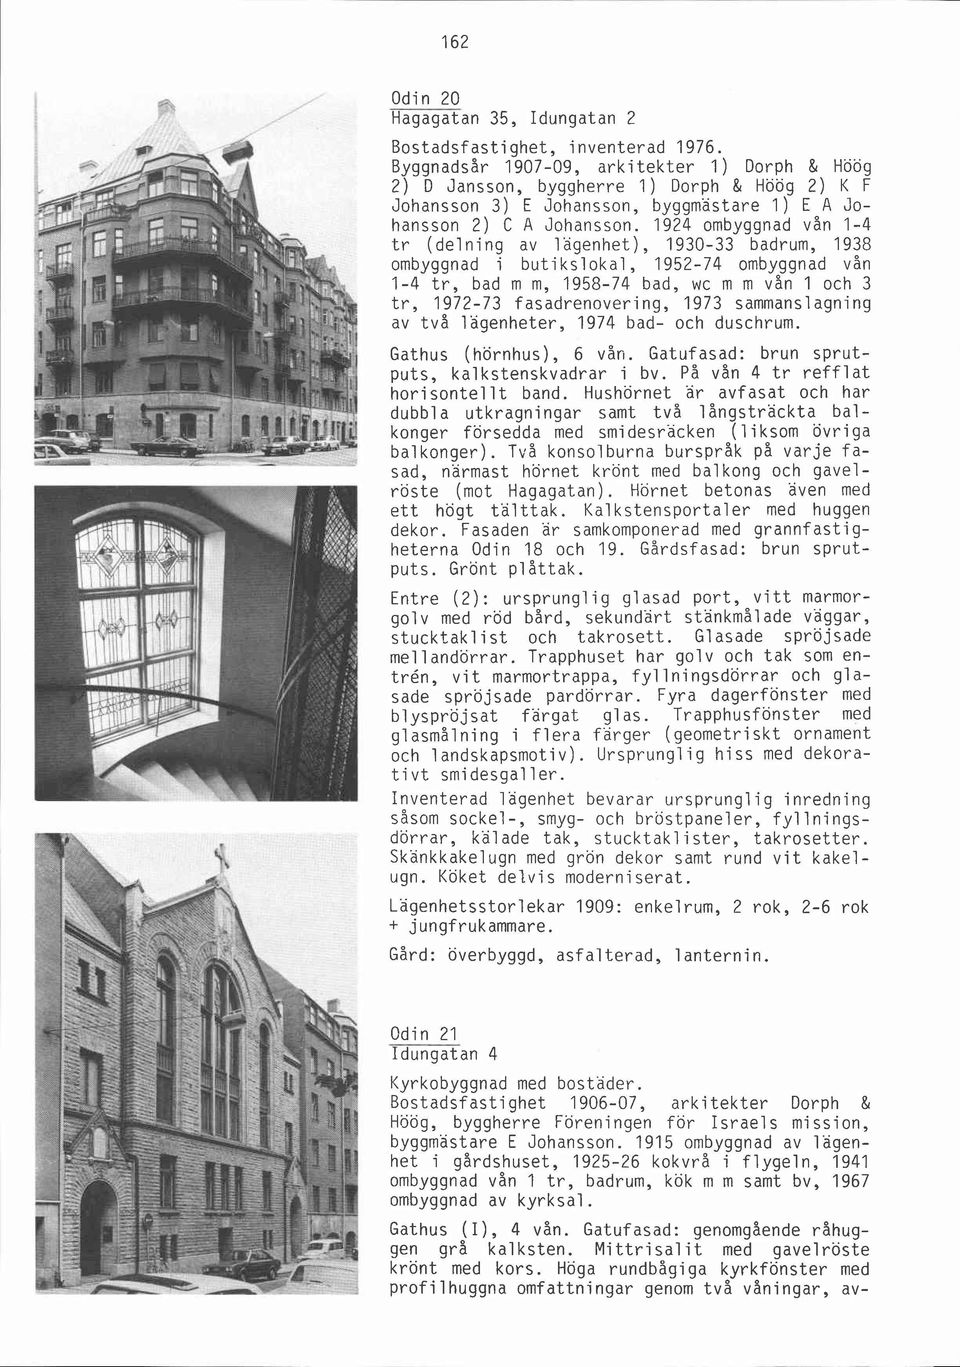 sammanslagning av två lägenheter, 1974 bad- och duschrum. Gathus (hörnhus), 6 vån. Gatufasad: brun sprutputs, kalkstenskvadrar i bv. På vån 4 tr refflat horisontellt band.